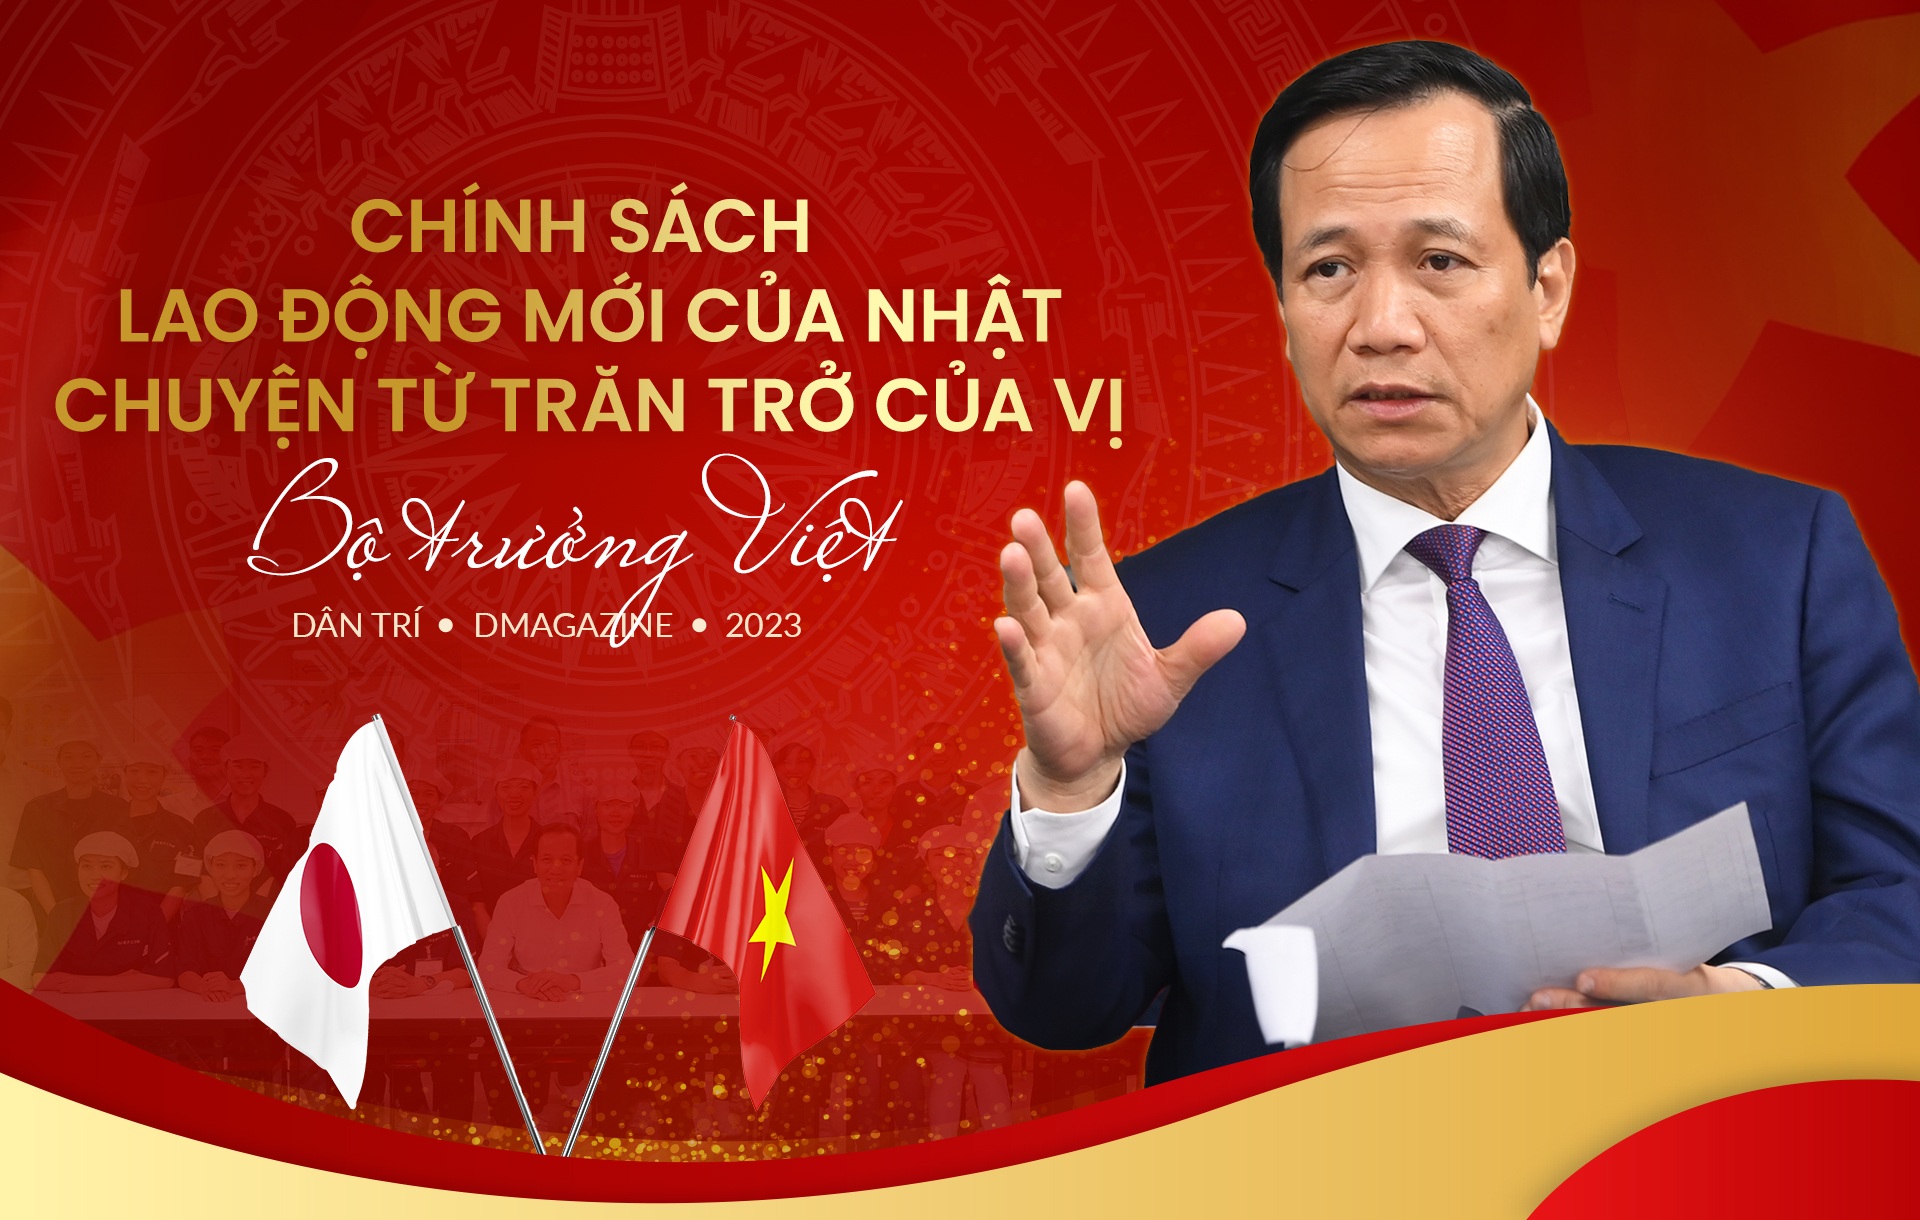 Chính sách lao động mới của Nhật, chuyện từ trăn trở của vị Bộ trưởng Việt